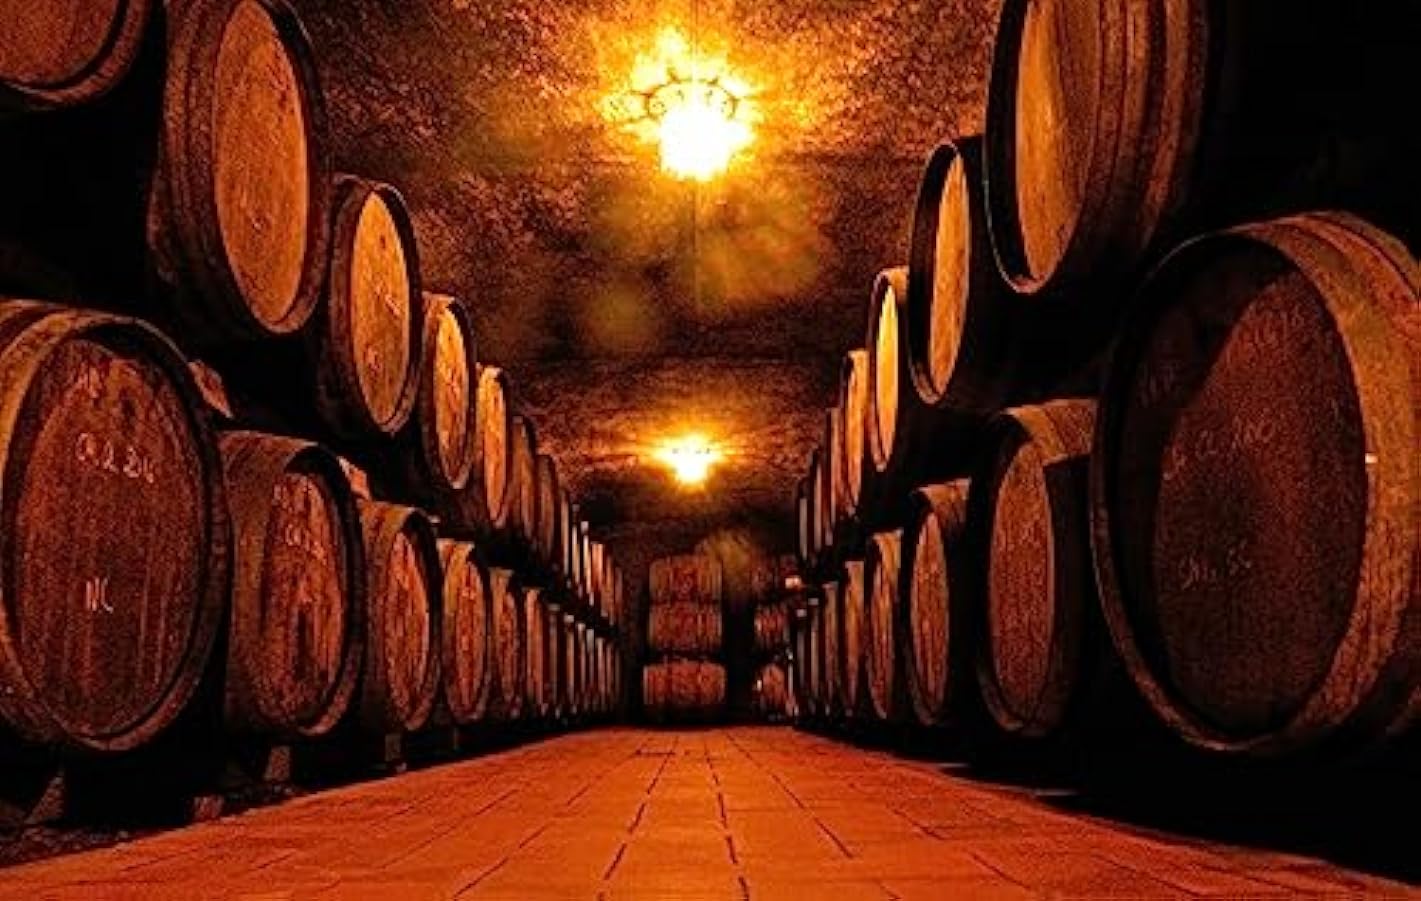 Castellare di Castellina Chianti Classico DOCG Magnum Vino Rosso - 1500 ml 958235961